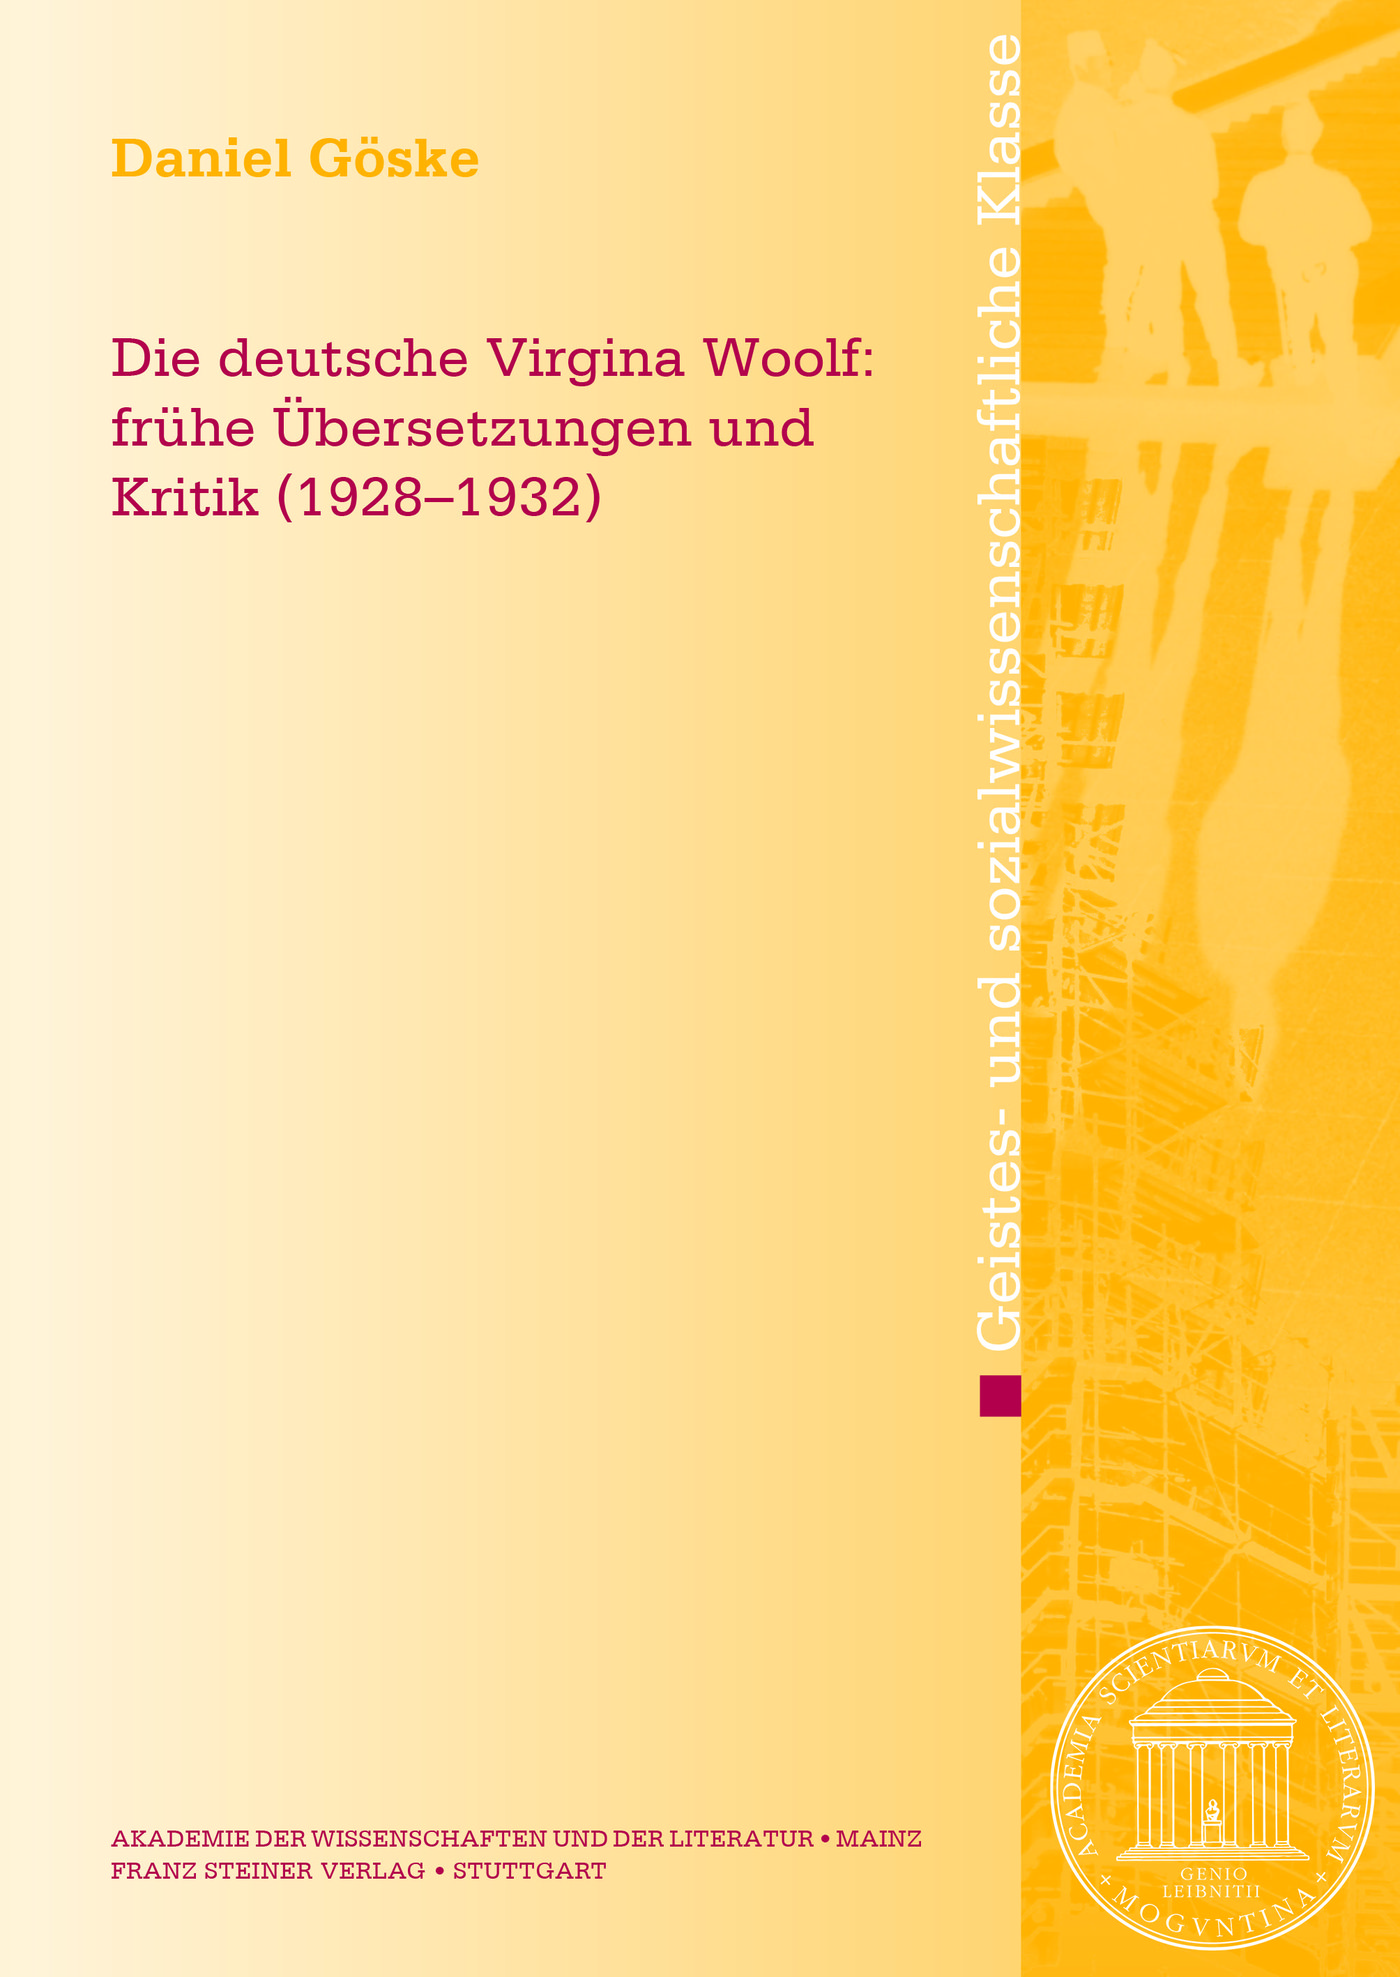 Die deutsche Virginia Woolf